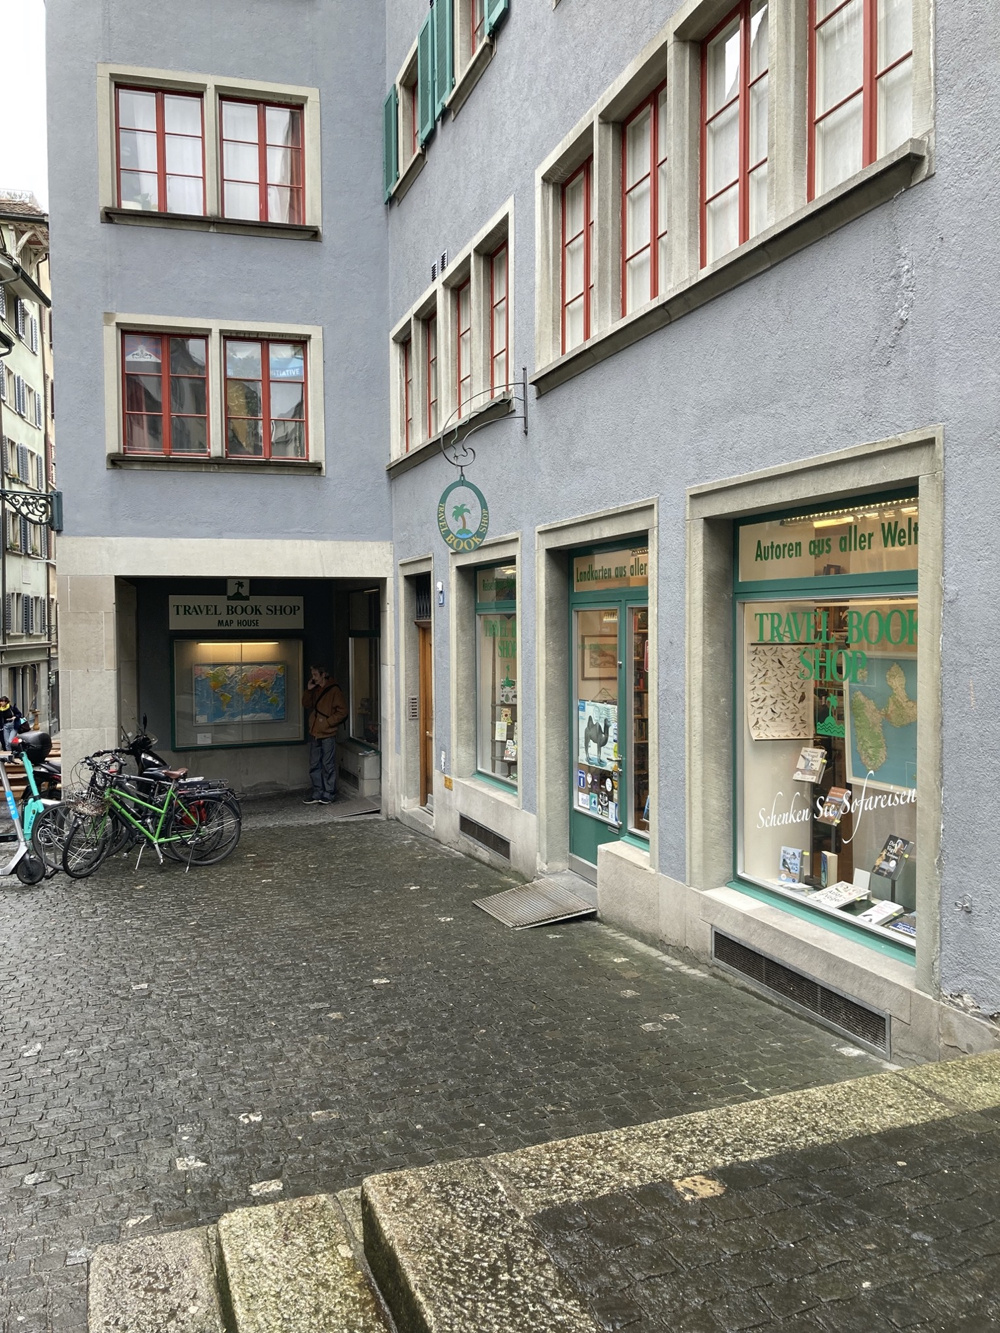 Fassade des Travel Book Shop in Zürich, über dem Eingang hängt ein Zunftzeichen mit einer Palme, die Fensterrahmen sind grün gestrichen, im Hintergrund ist eine Reliefkarte in einem Schaukasten zu sehen